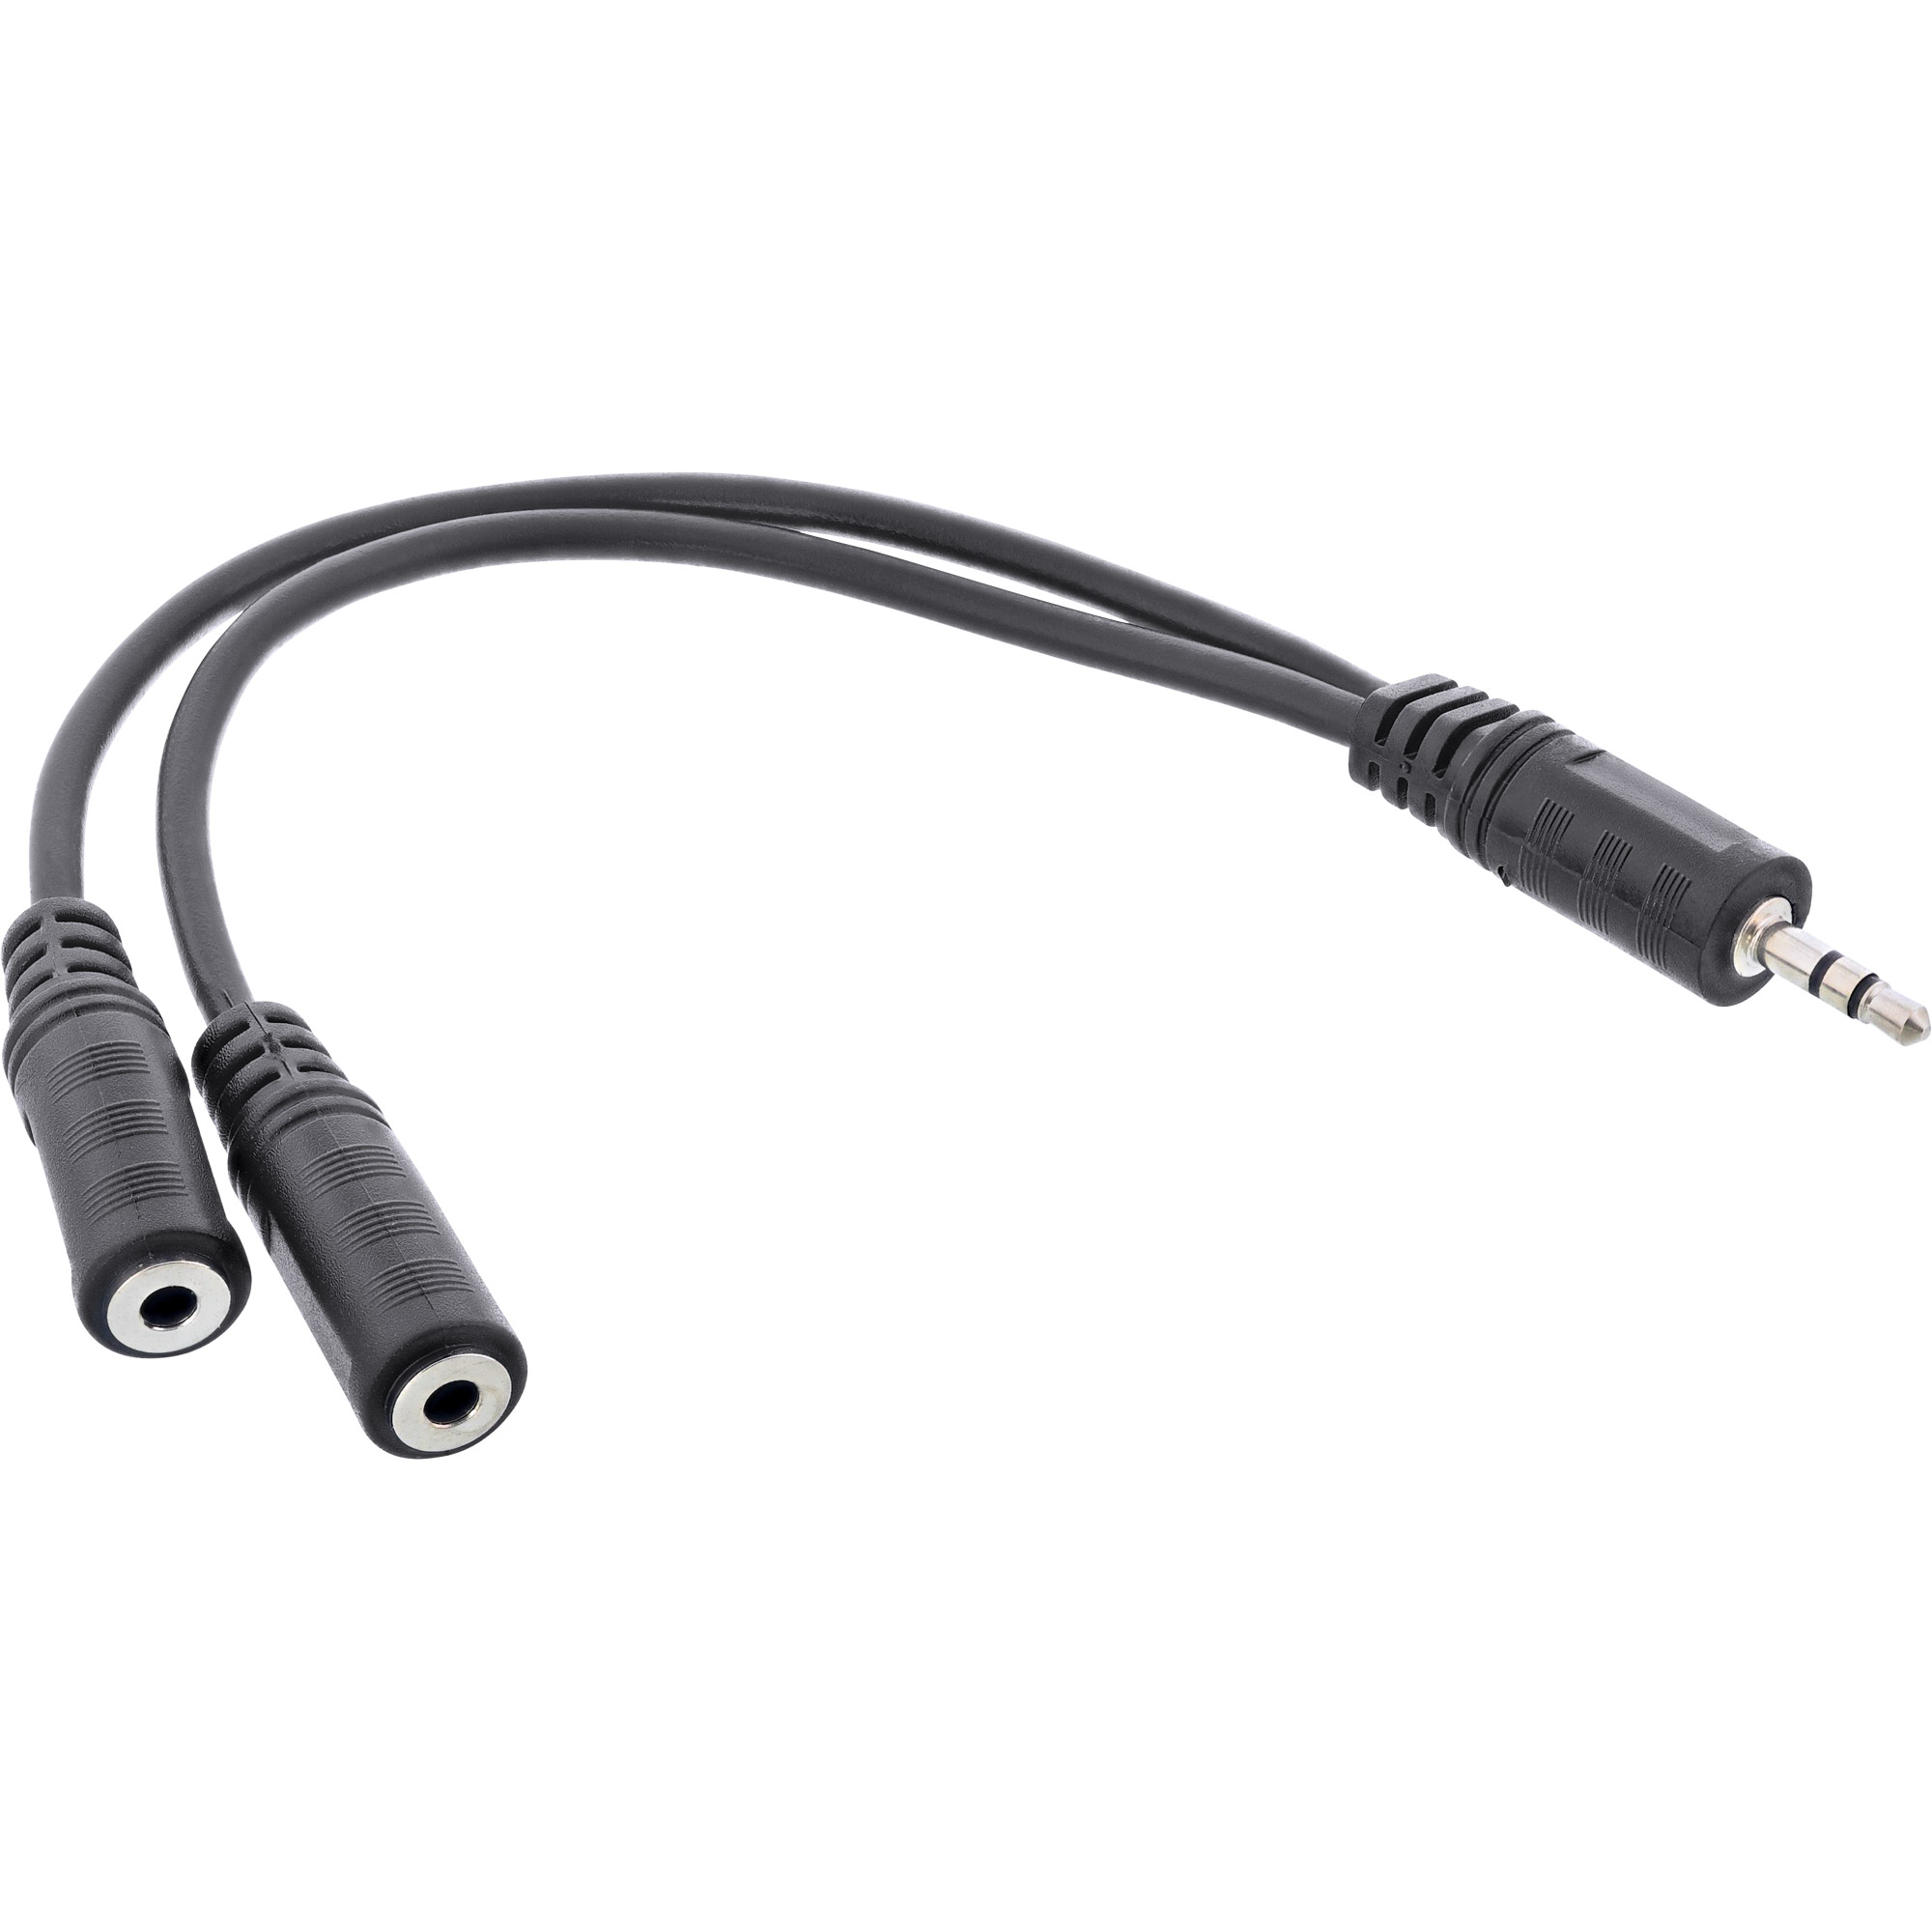 InLine® Klinken Y-Kabel, 3,5mm Klinke Stecker an 2x 3,5mm Klinke Buchse, Stereo